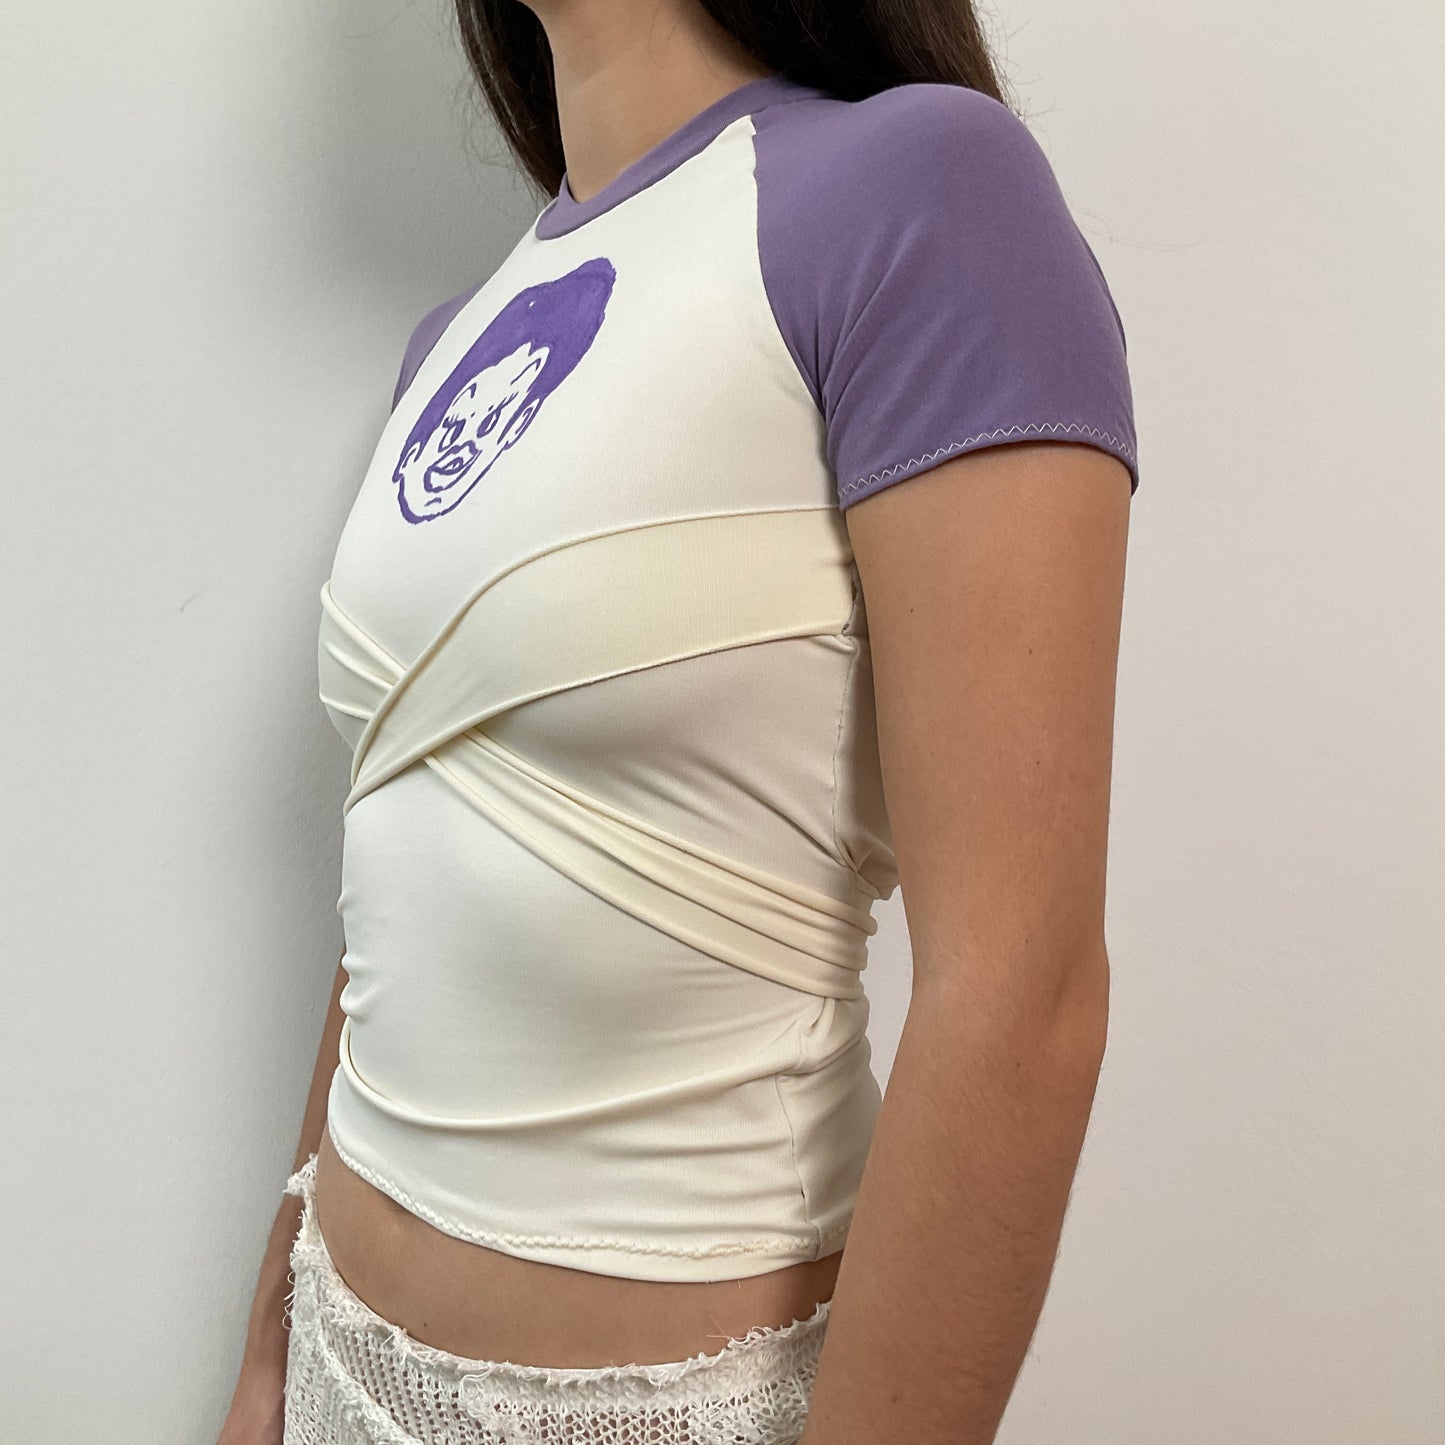 Purple bondage t-shirt